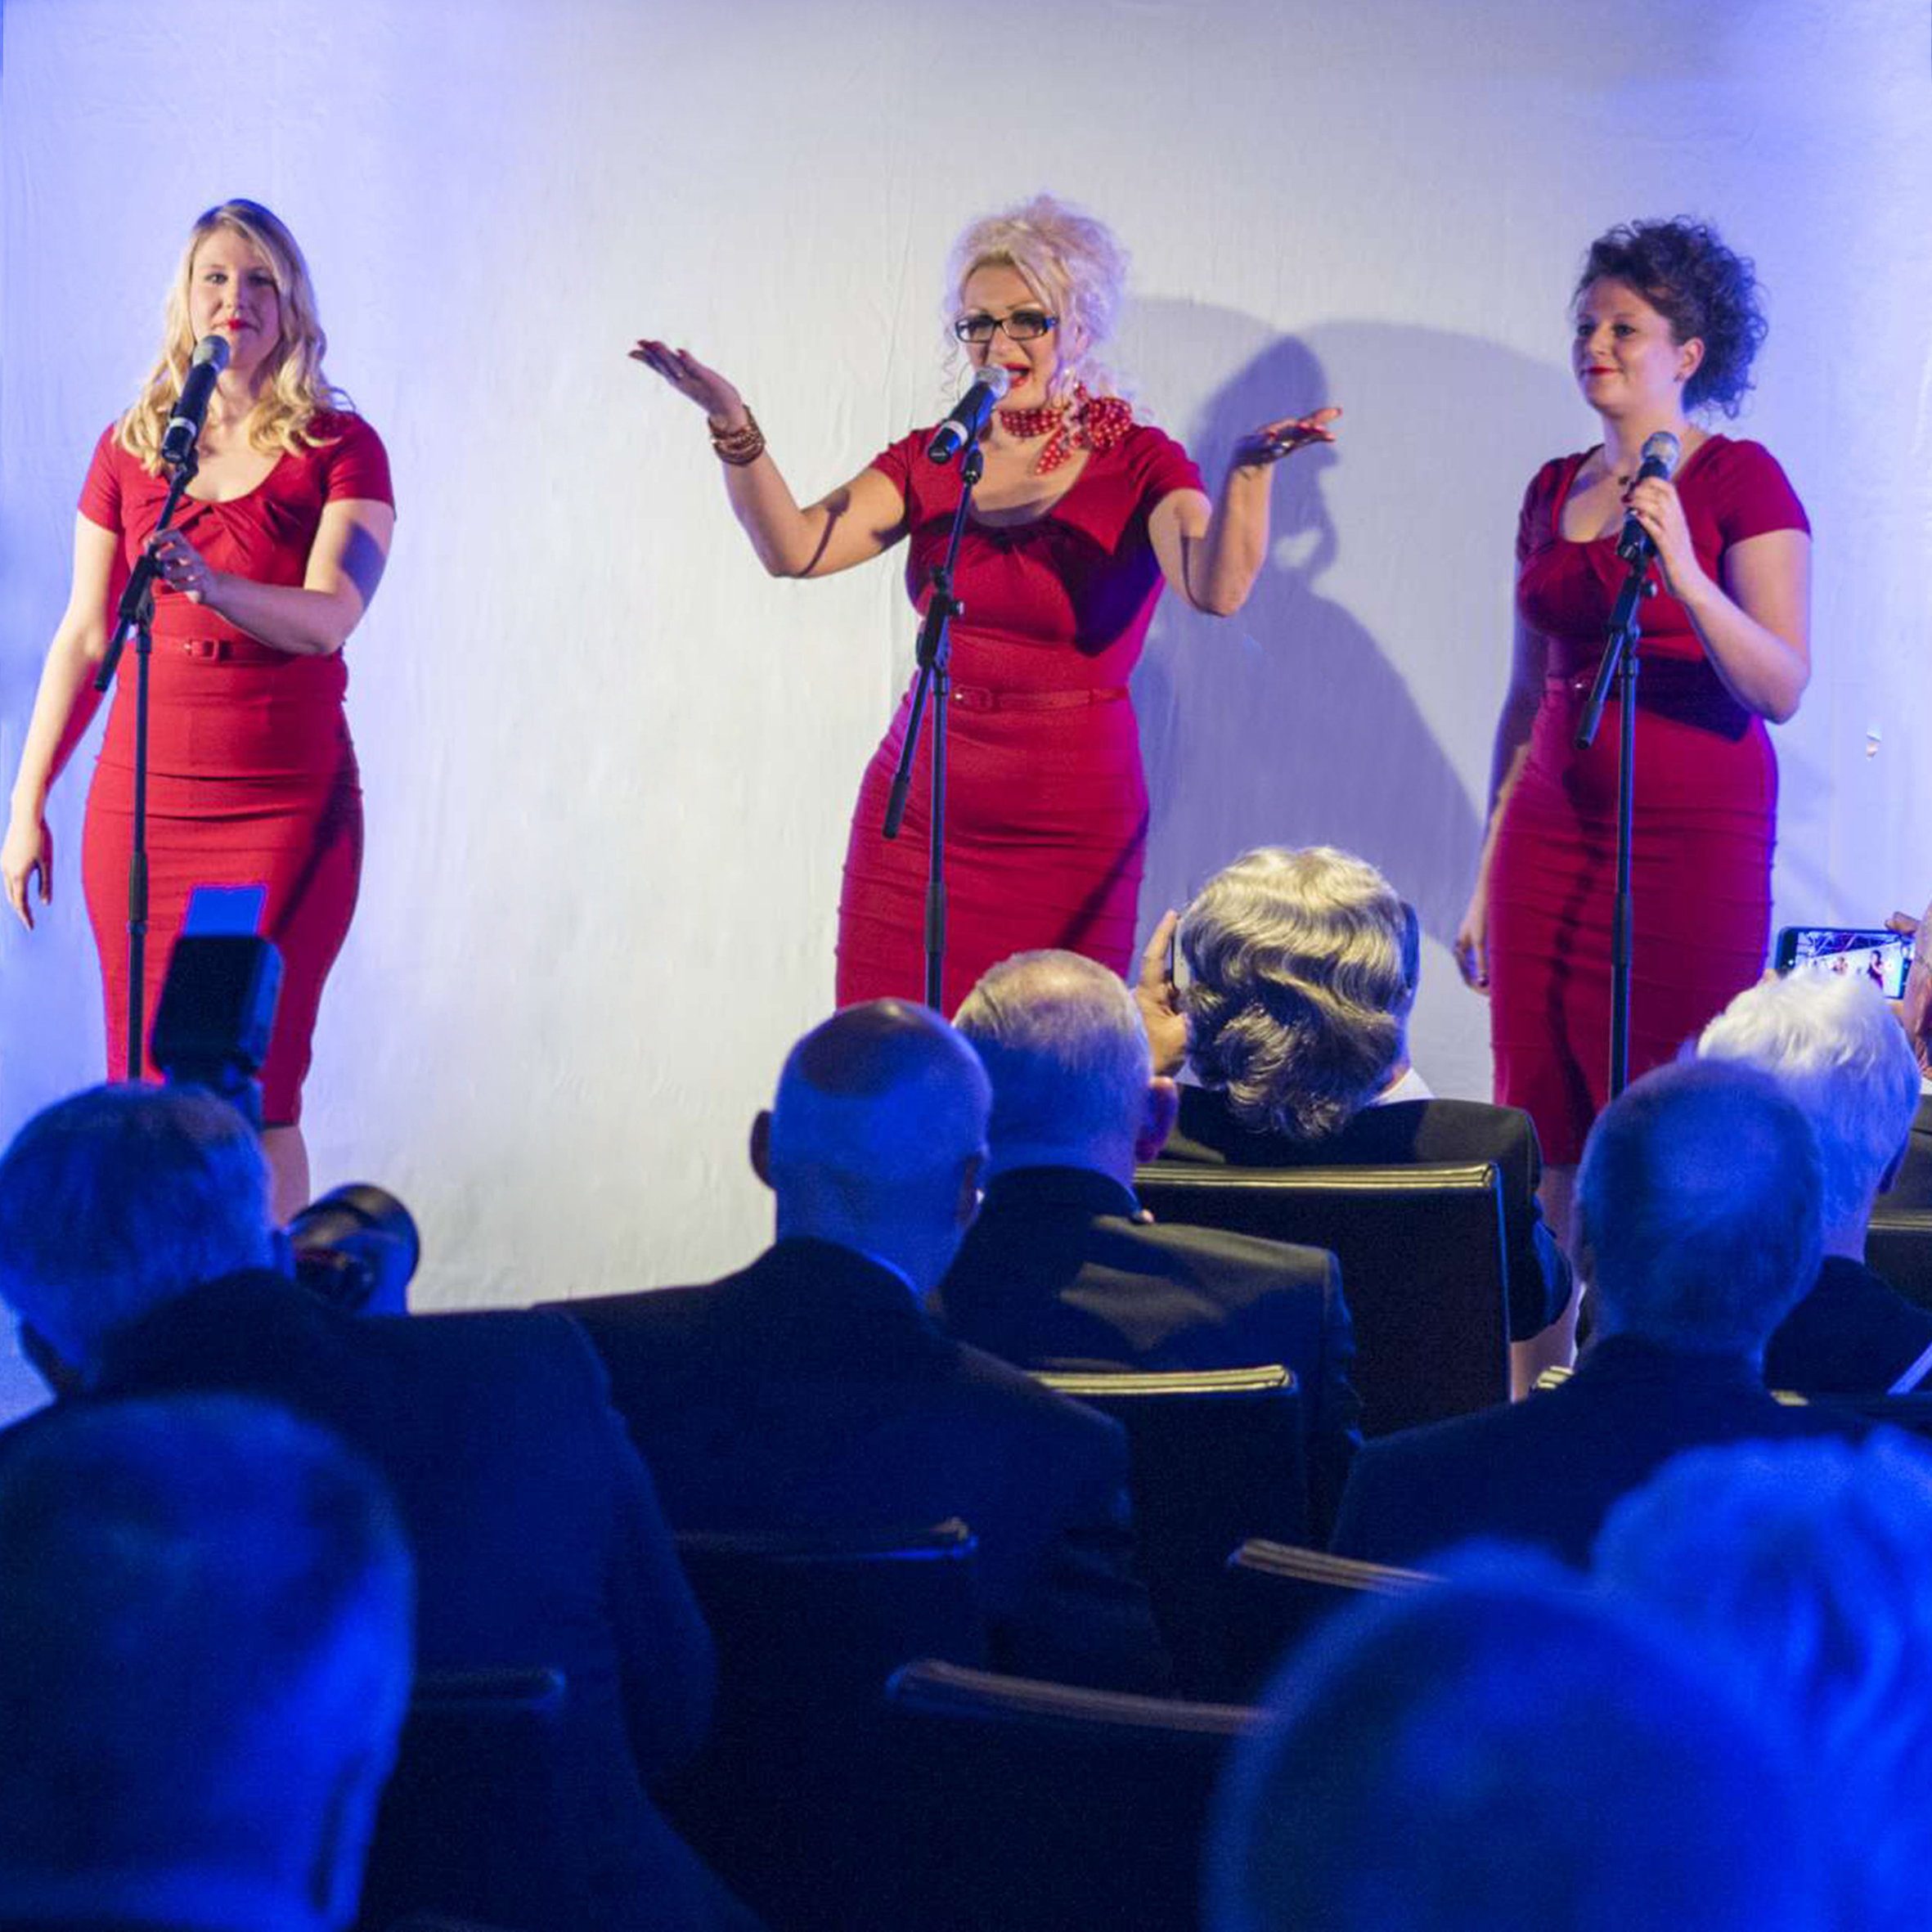 Foto 90. Jubiläum der PVS, Impression des musikalischen Programmes, drei Sängerinnen in roten Kleidern mit Publikum im Vordergrund